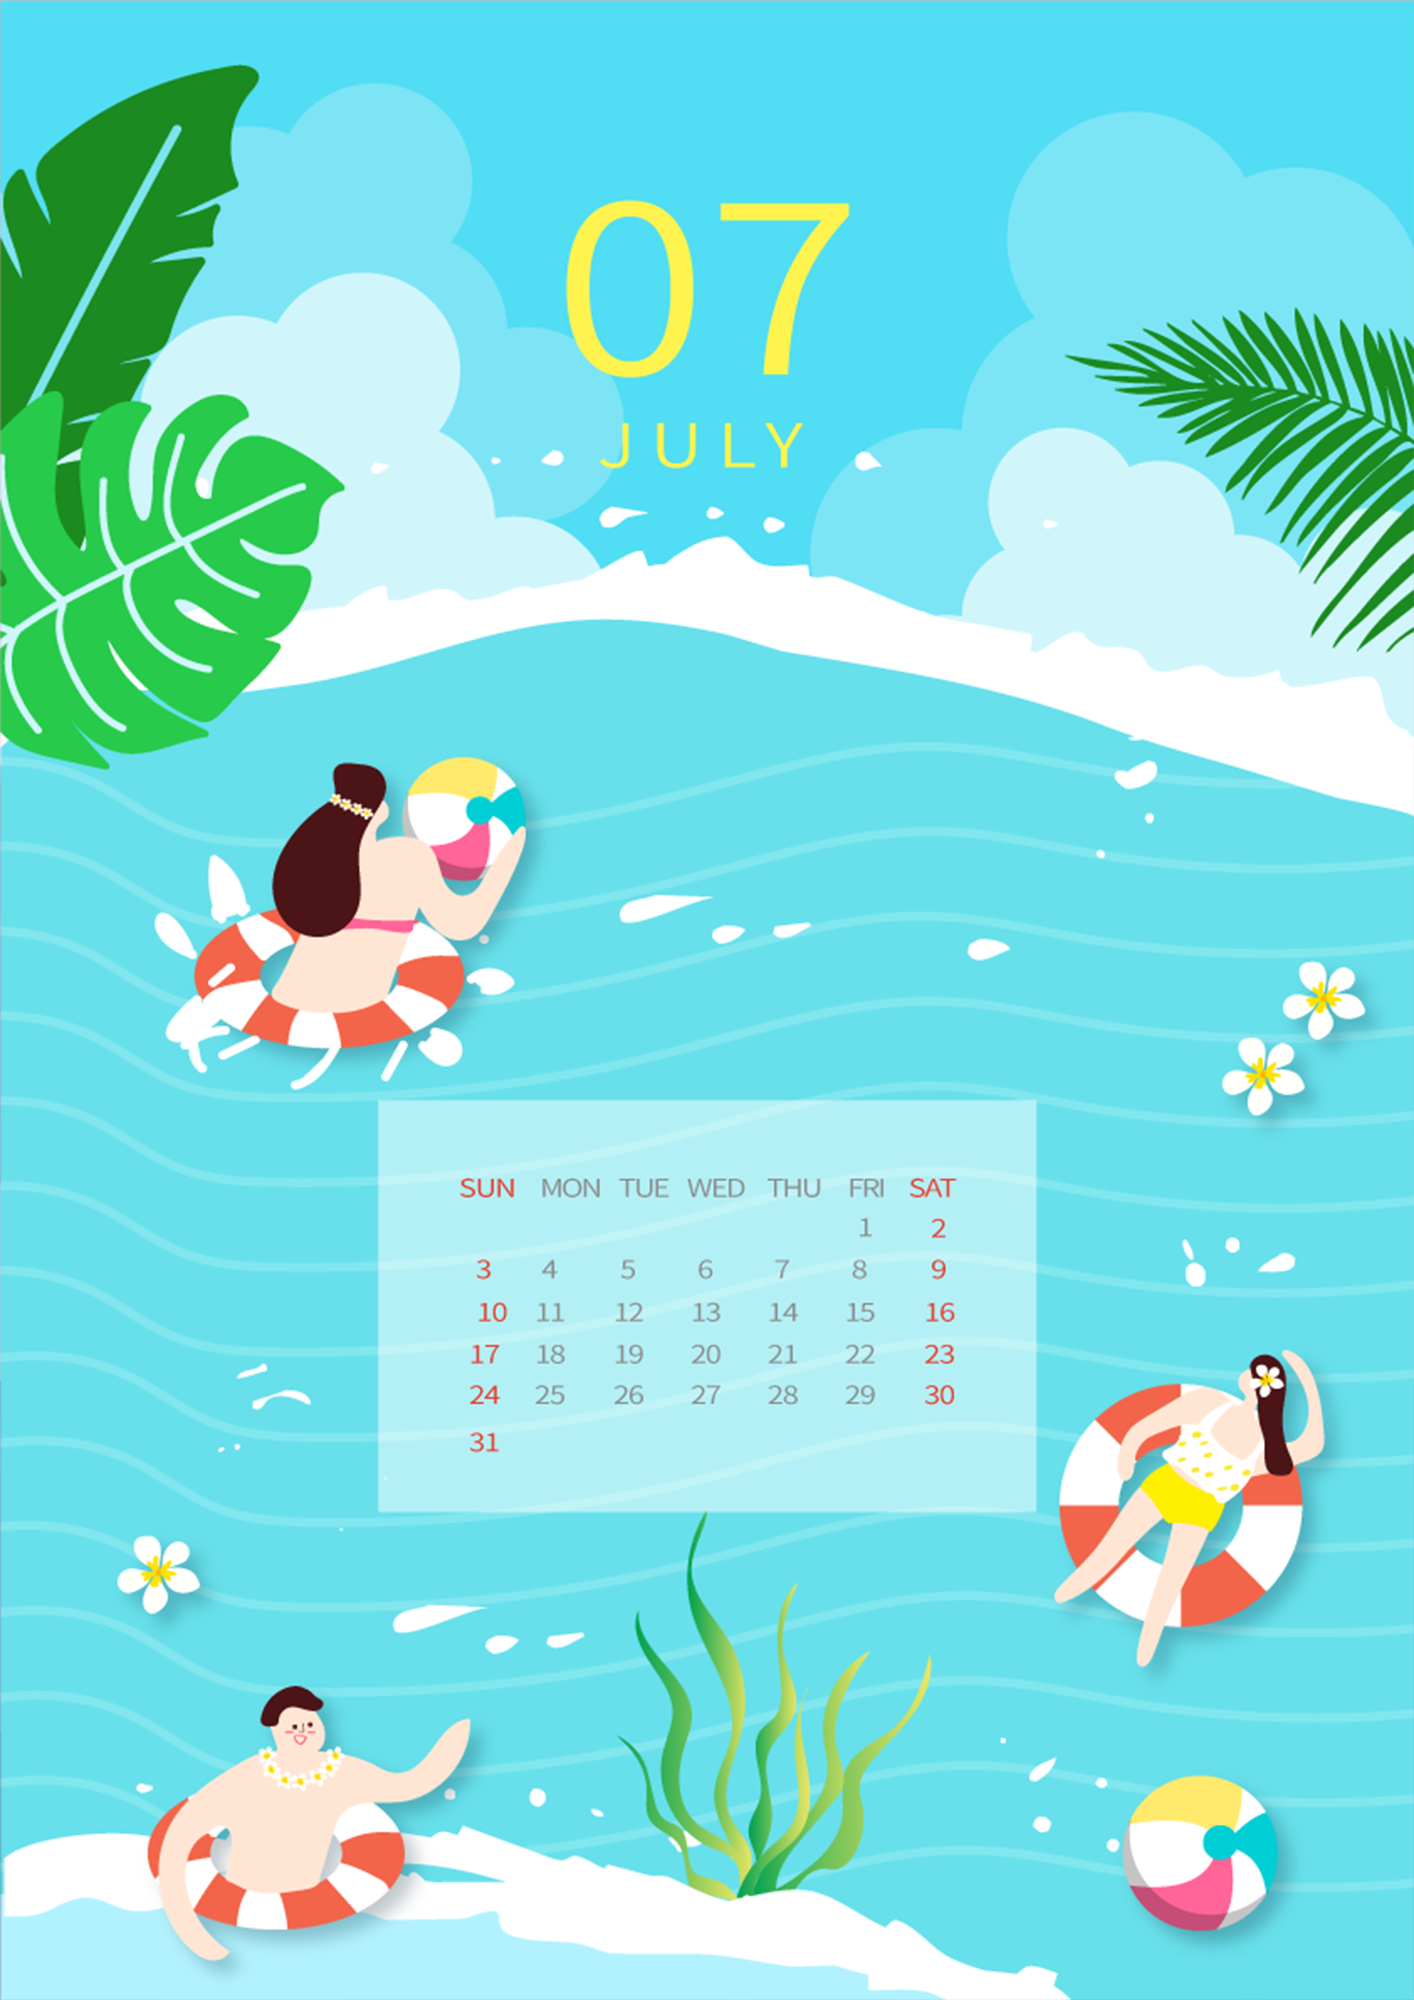 游泳夏季插画风格蓝色7月日历图片